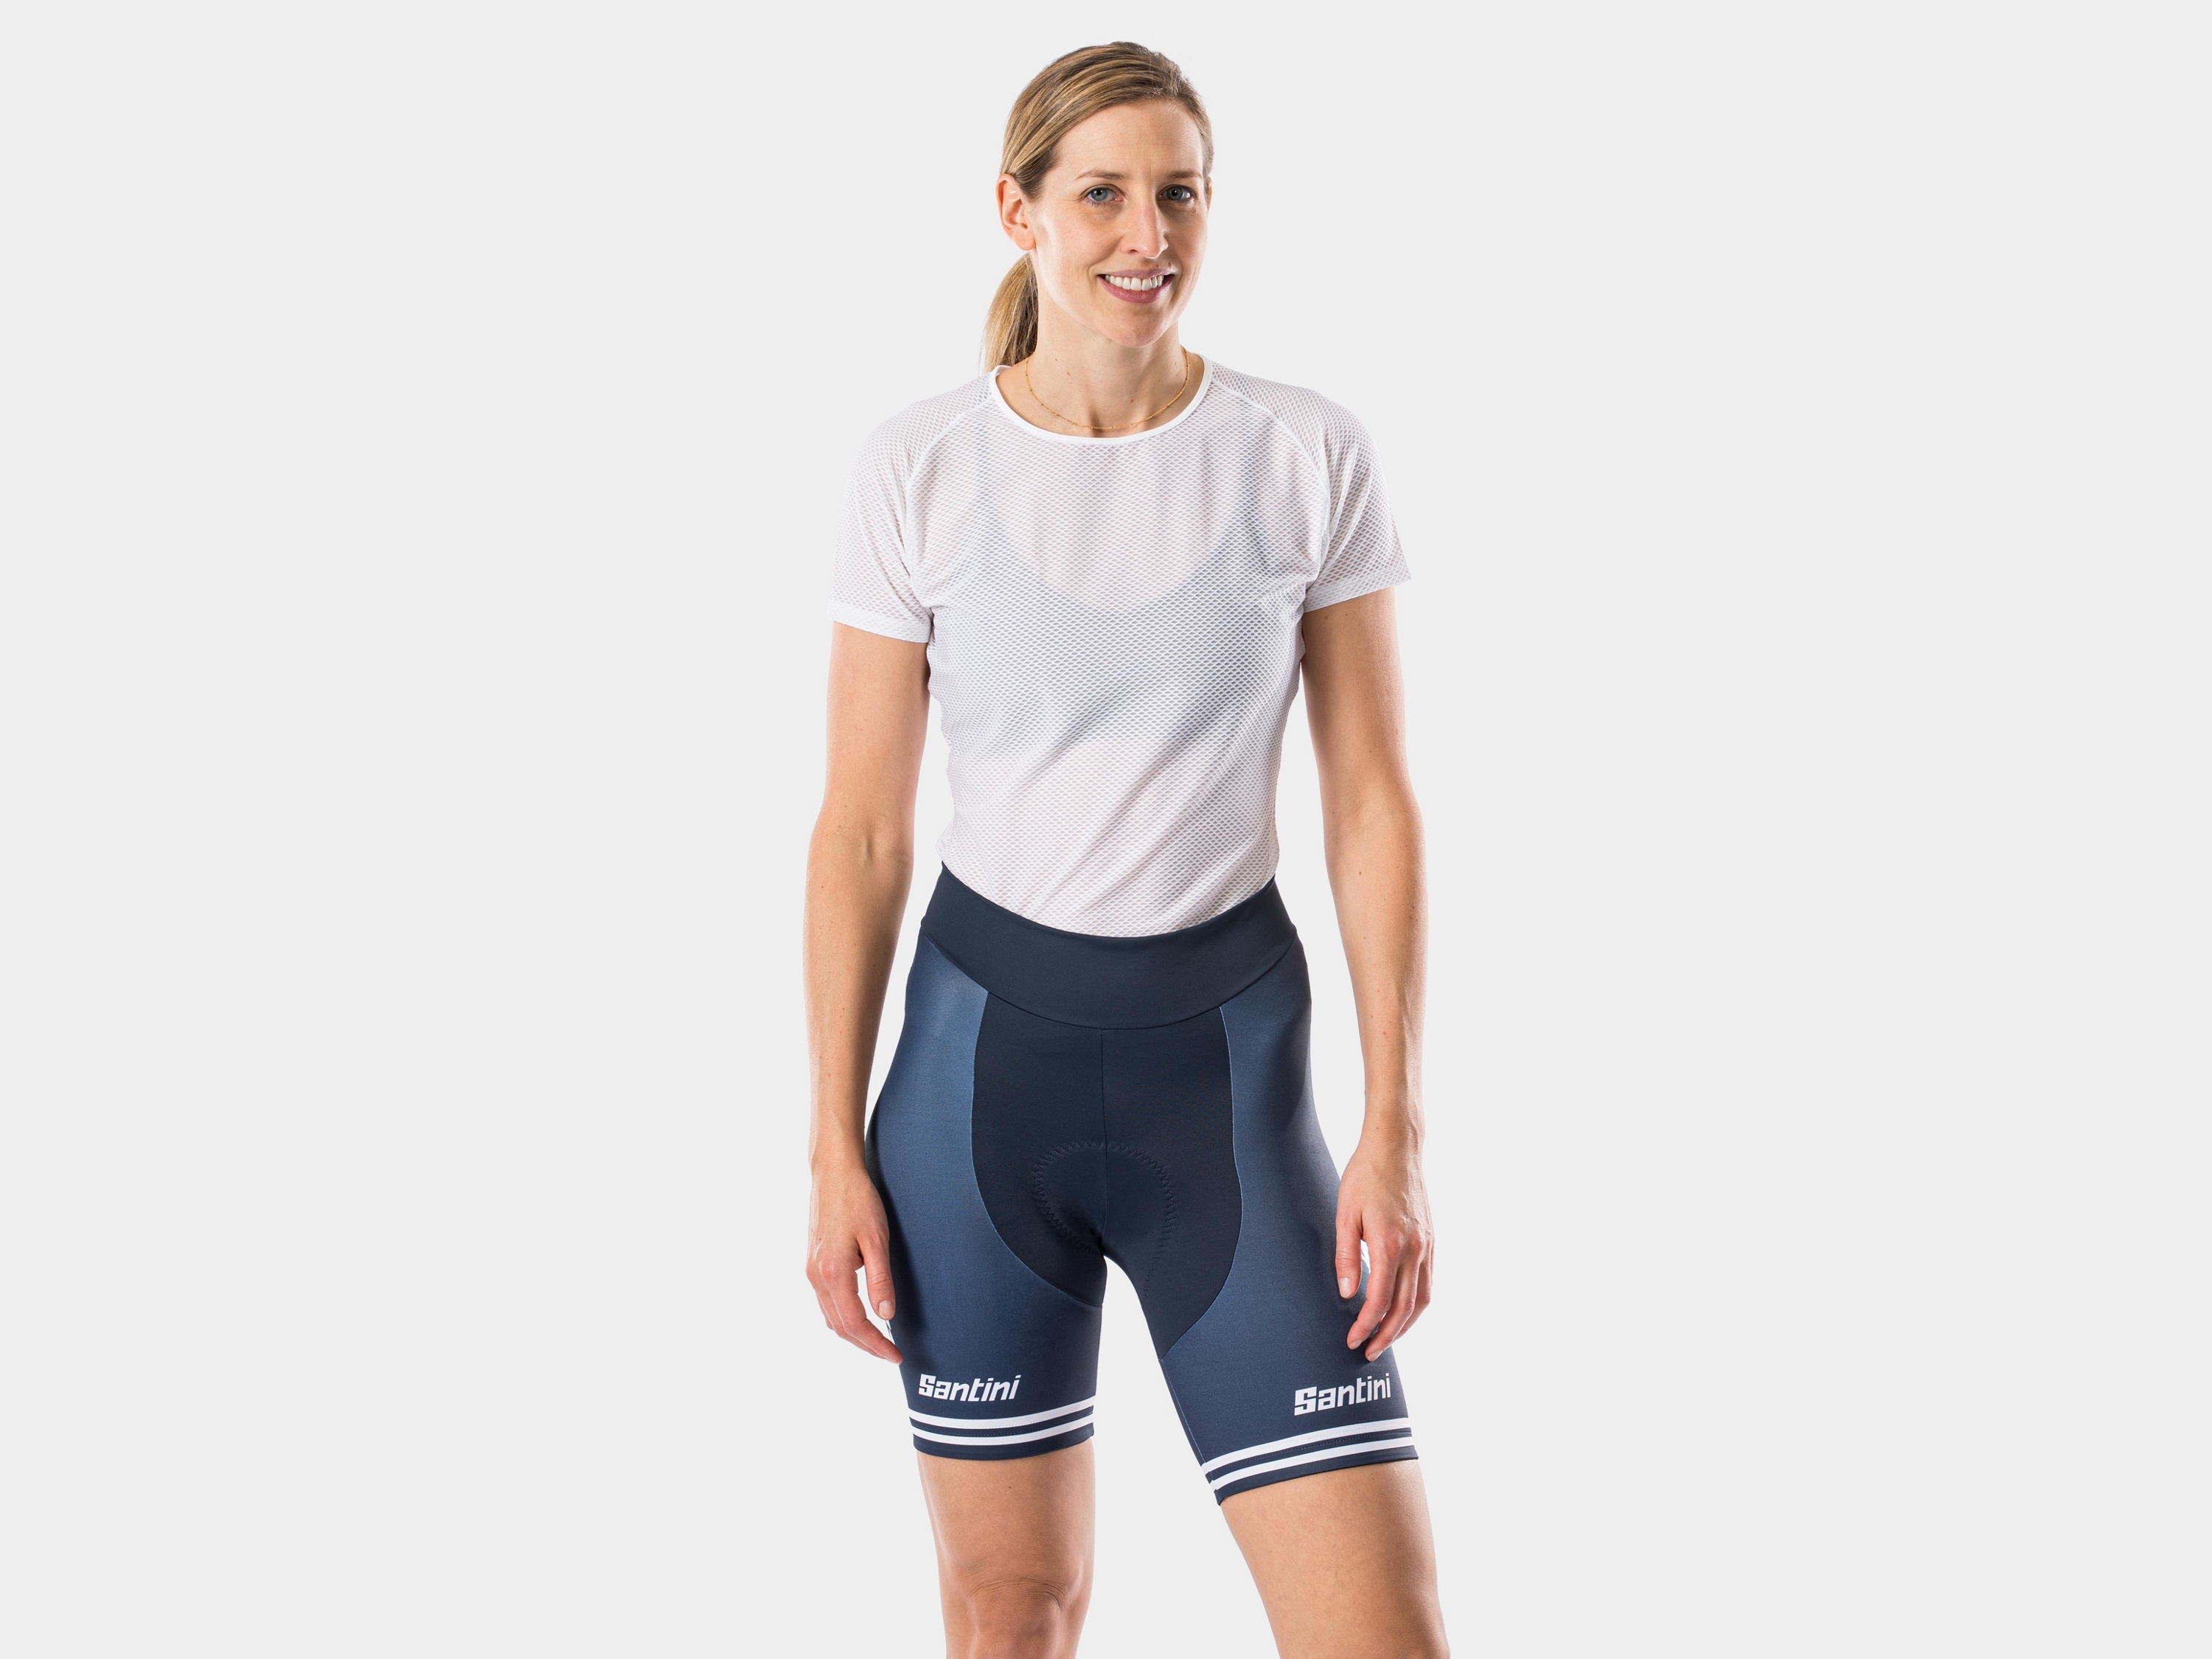 womens bike shorts on sale